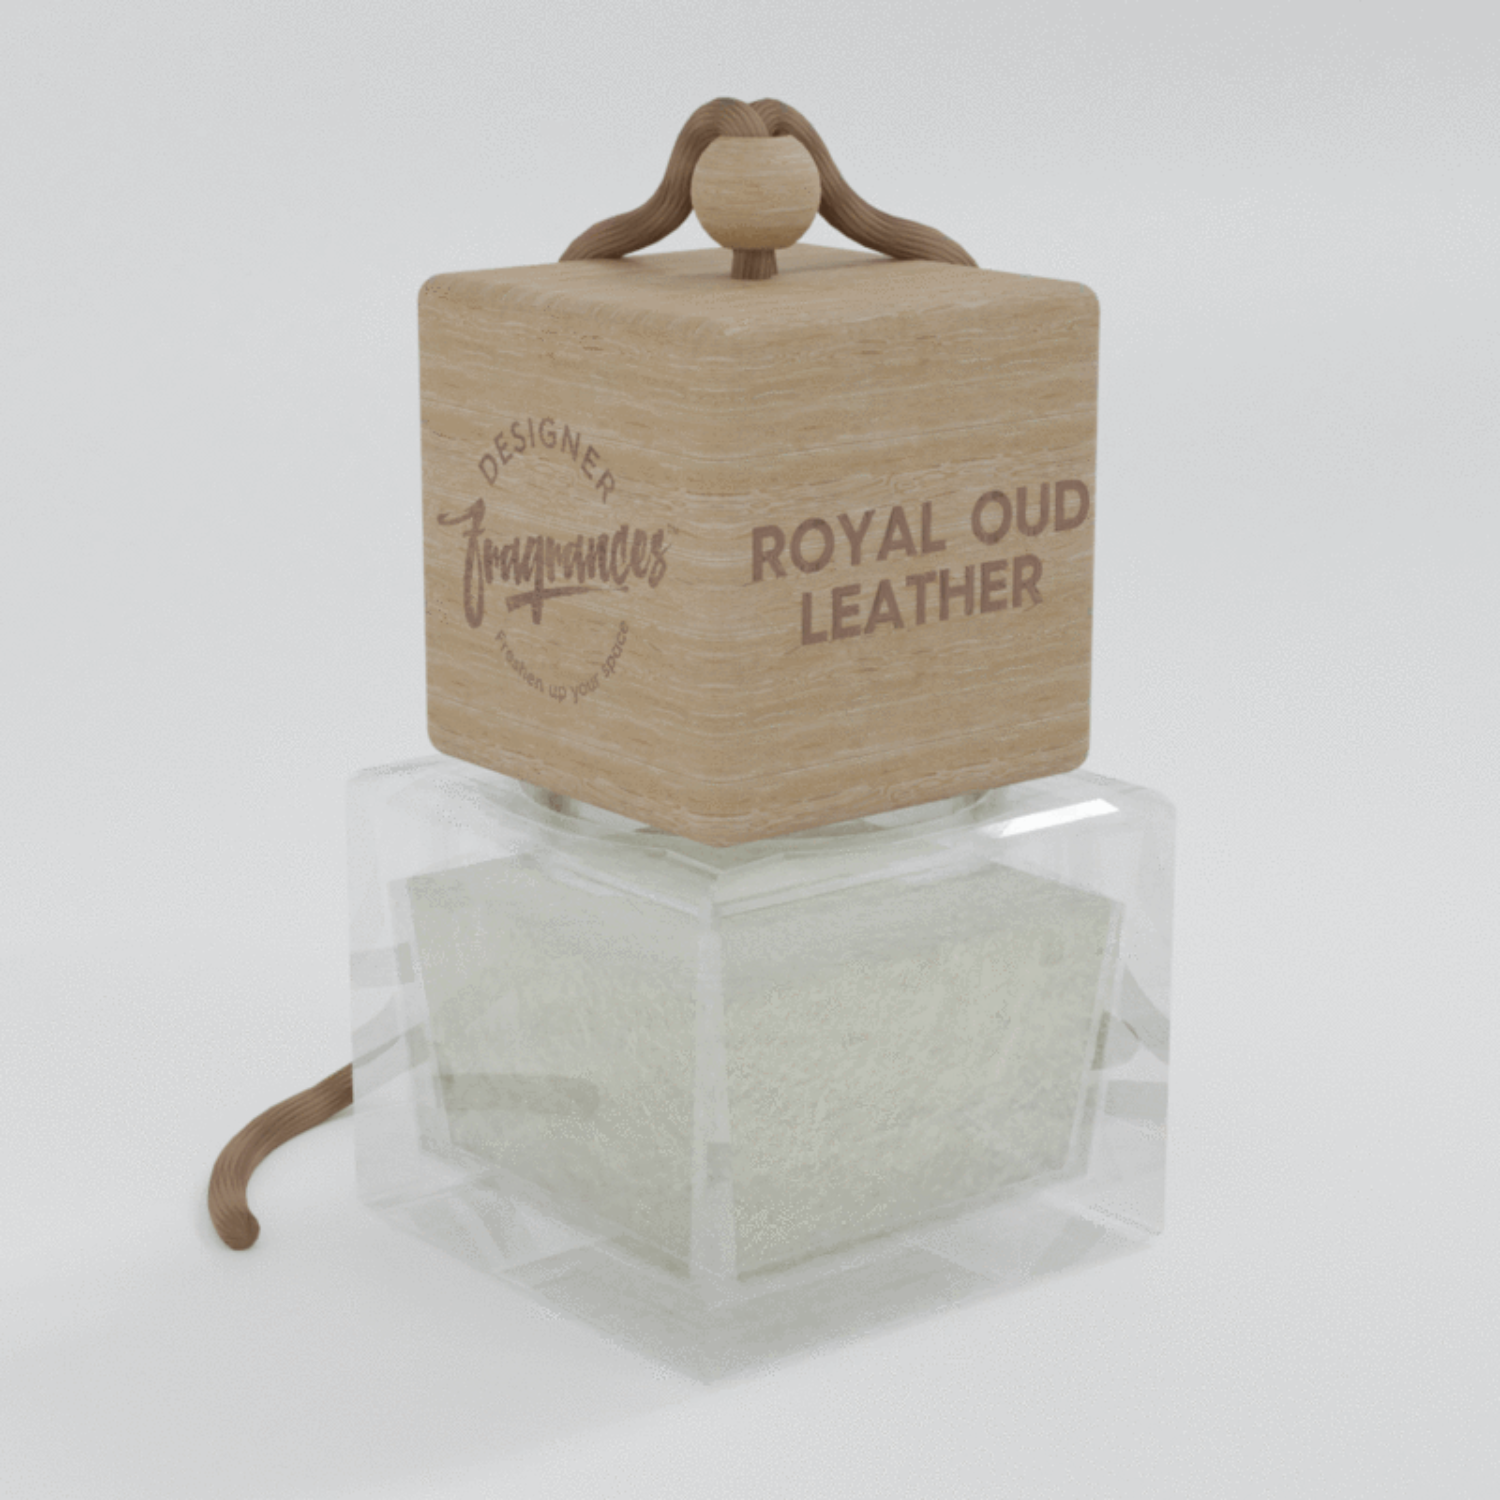 Royal Oud Leather Designer Fragrance Diffuser